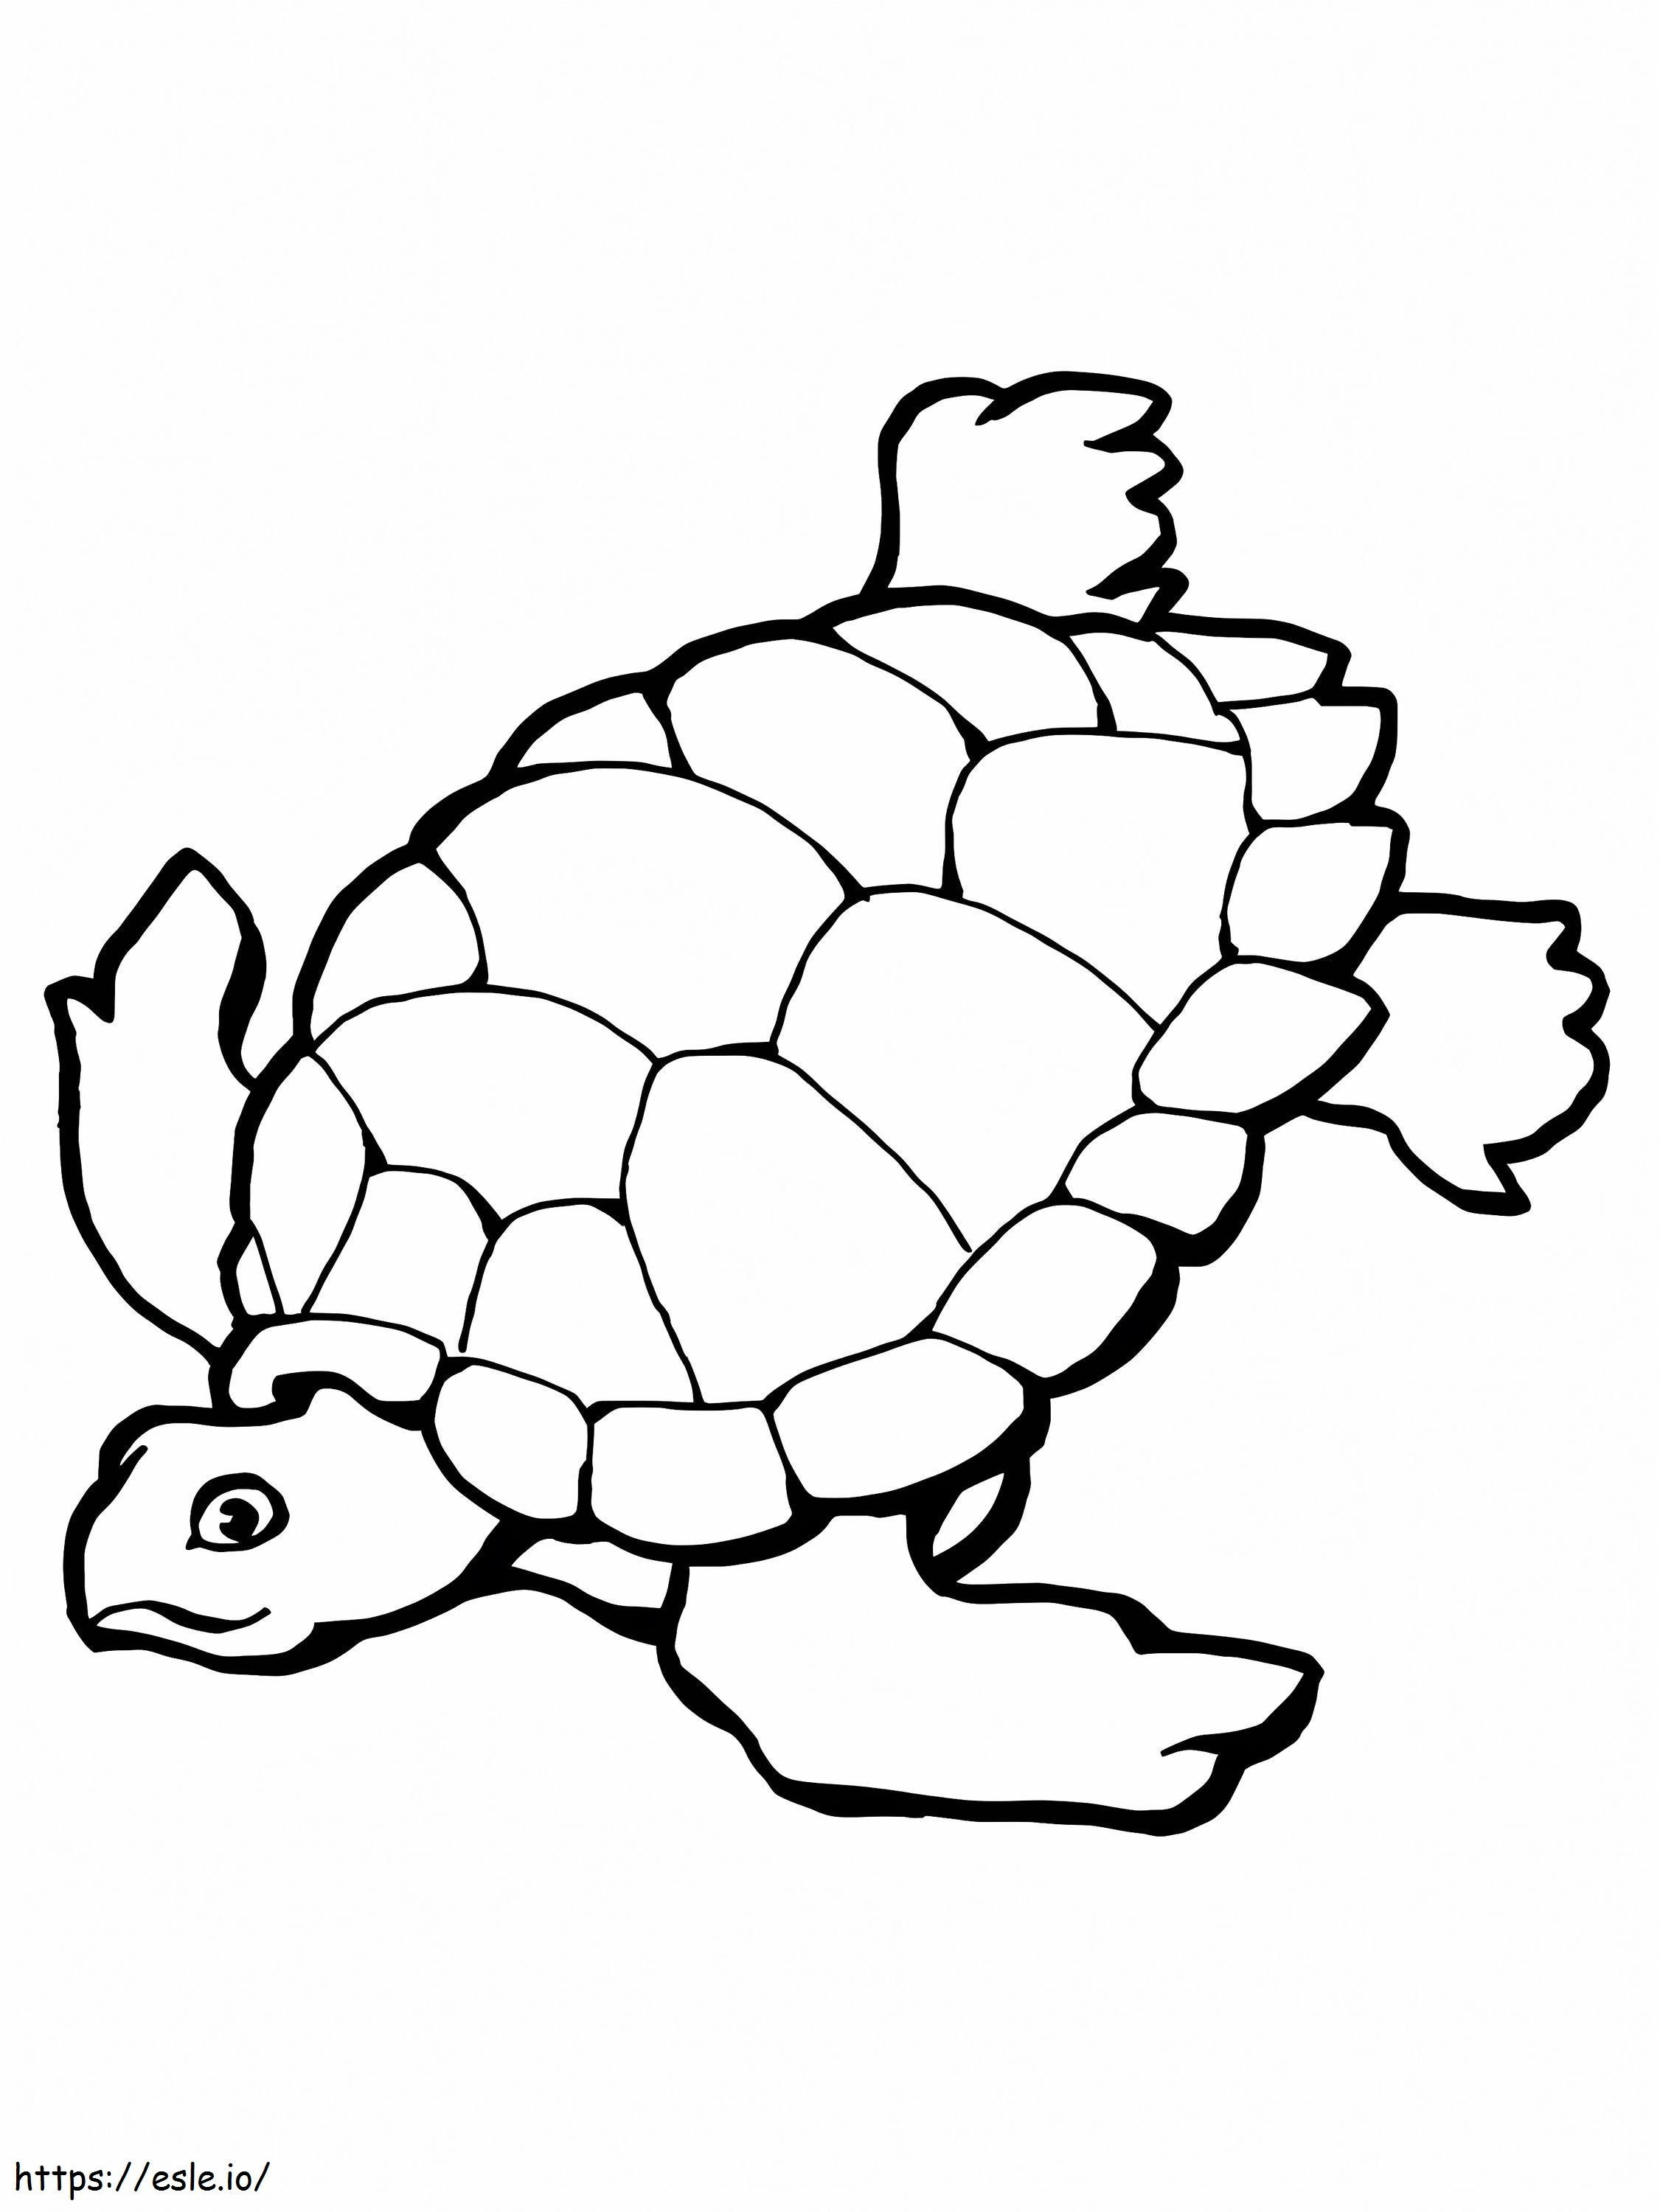 Pływający żółw morski kolorowanka